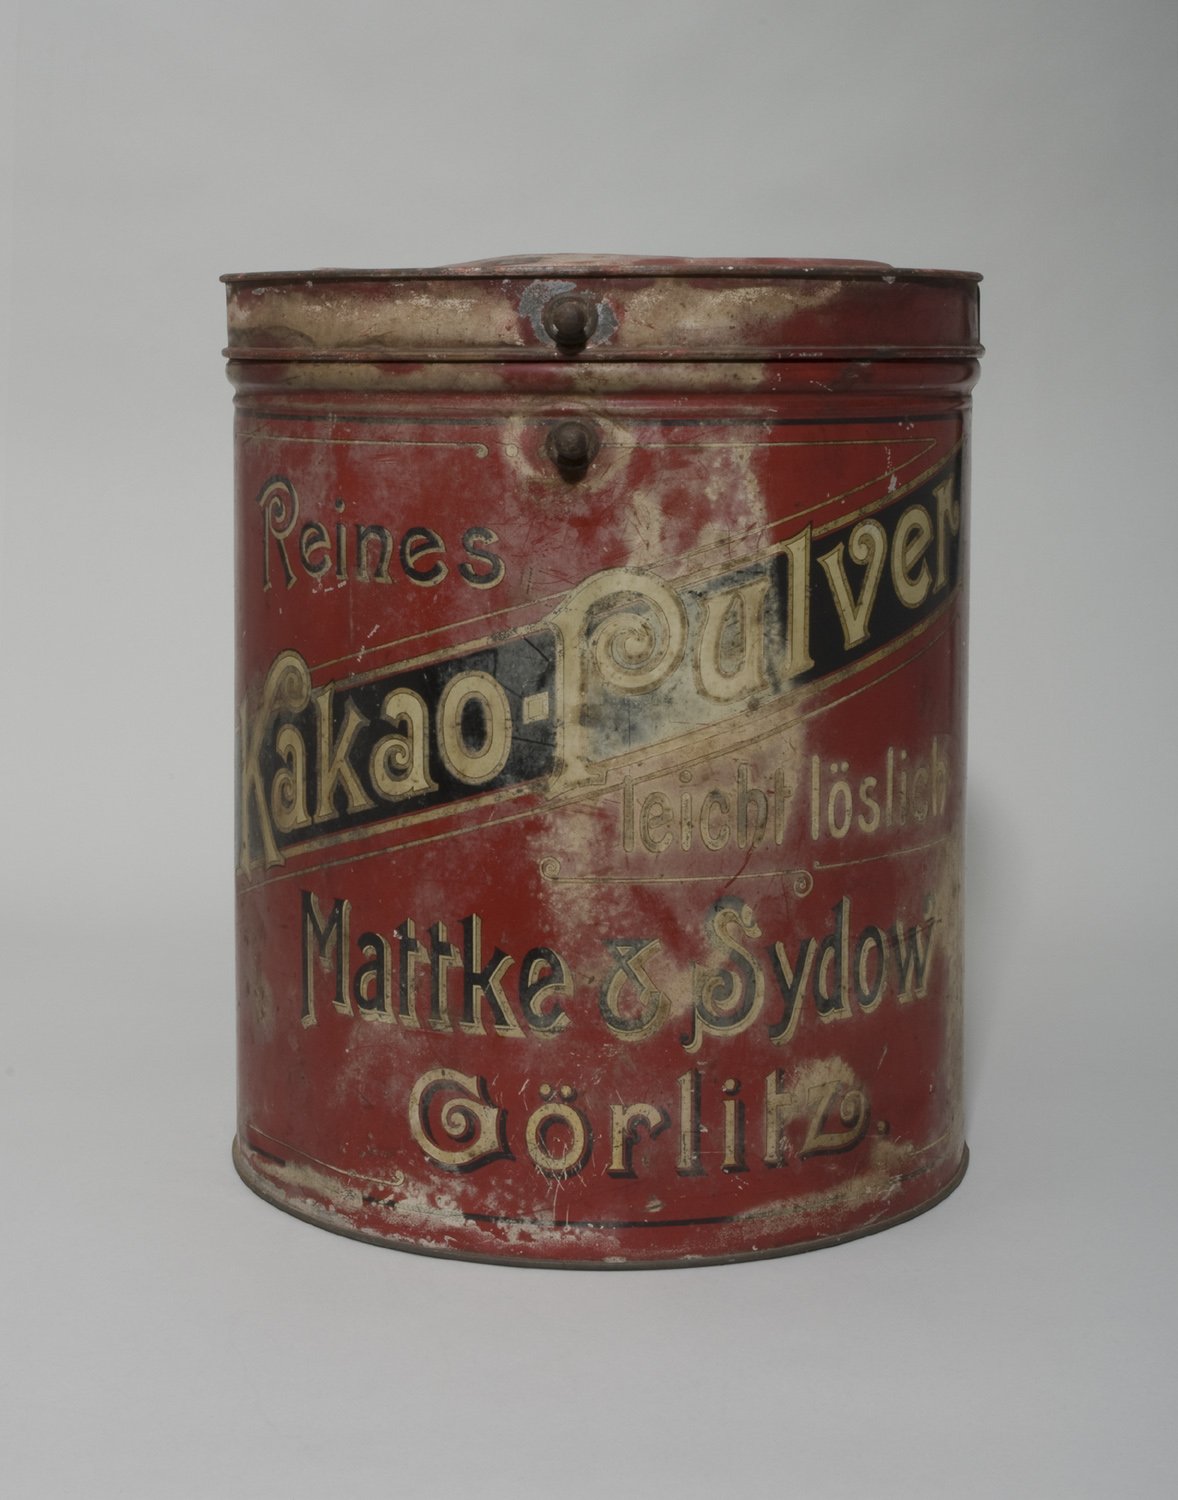 Dose für Kakao-Pulver von "Mattke & Sydow Görlitz" (Stiftung Domäne Dahlem - Landgut und Museum, Weiternutzung nur mit Genehmigung des Museums CC BY-NC-SA)